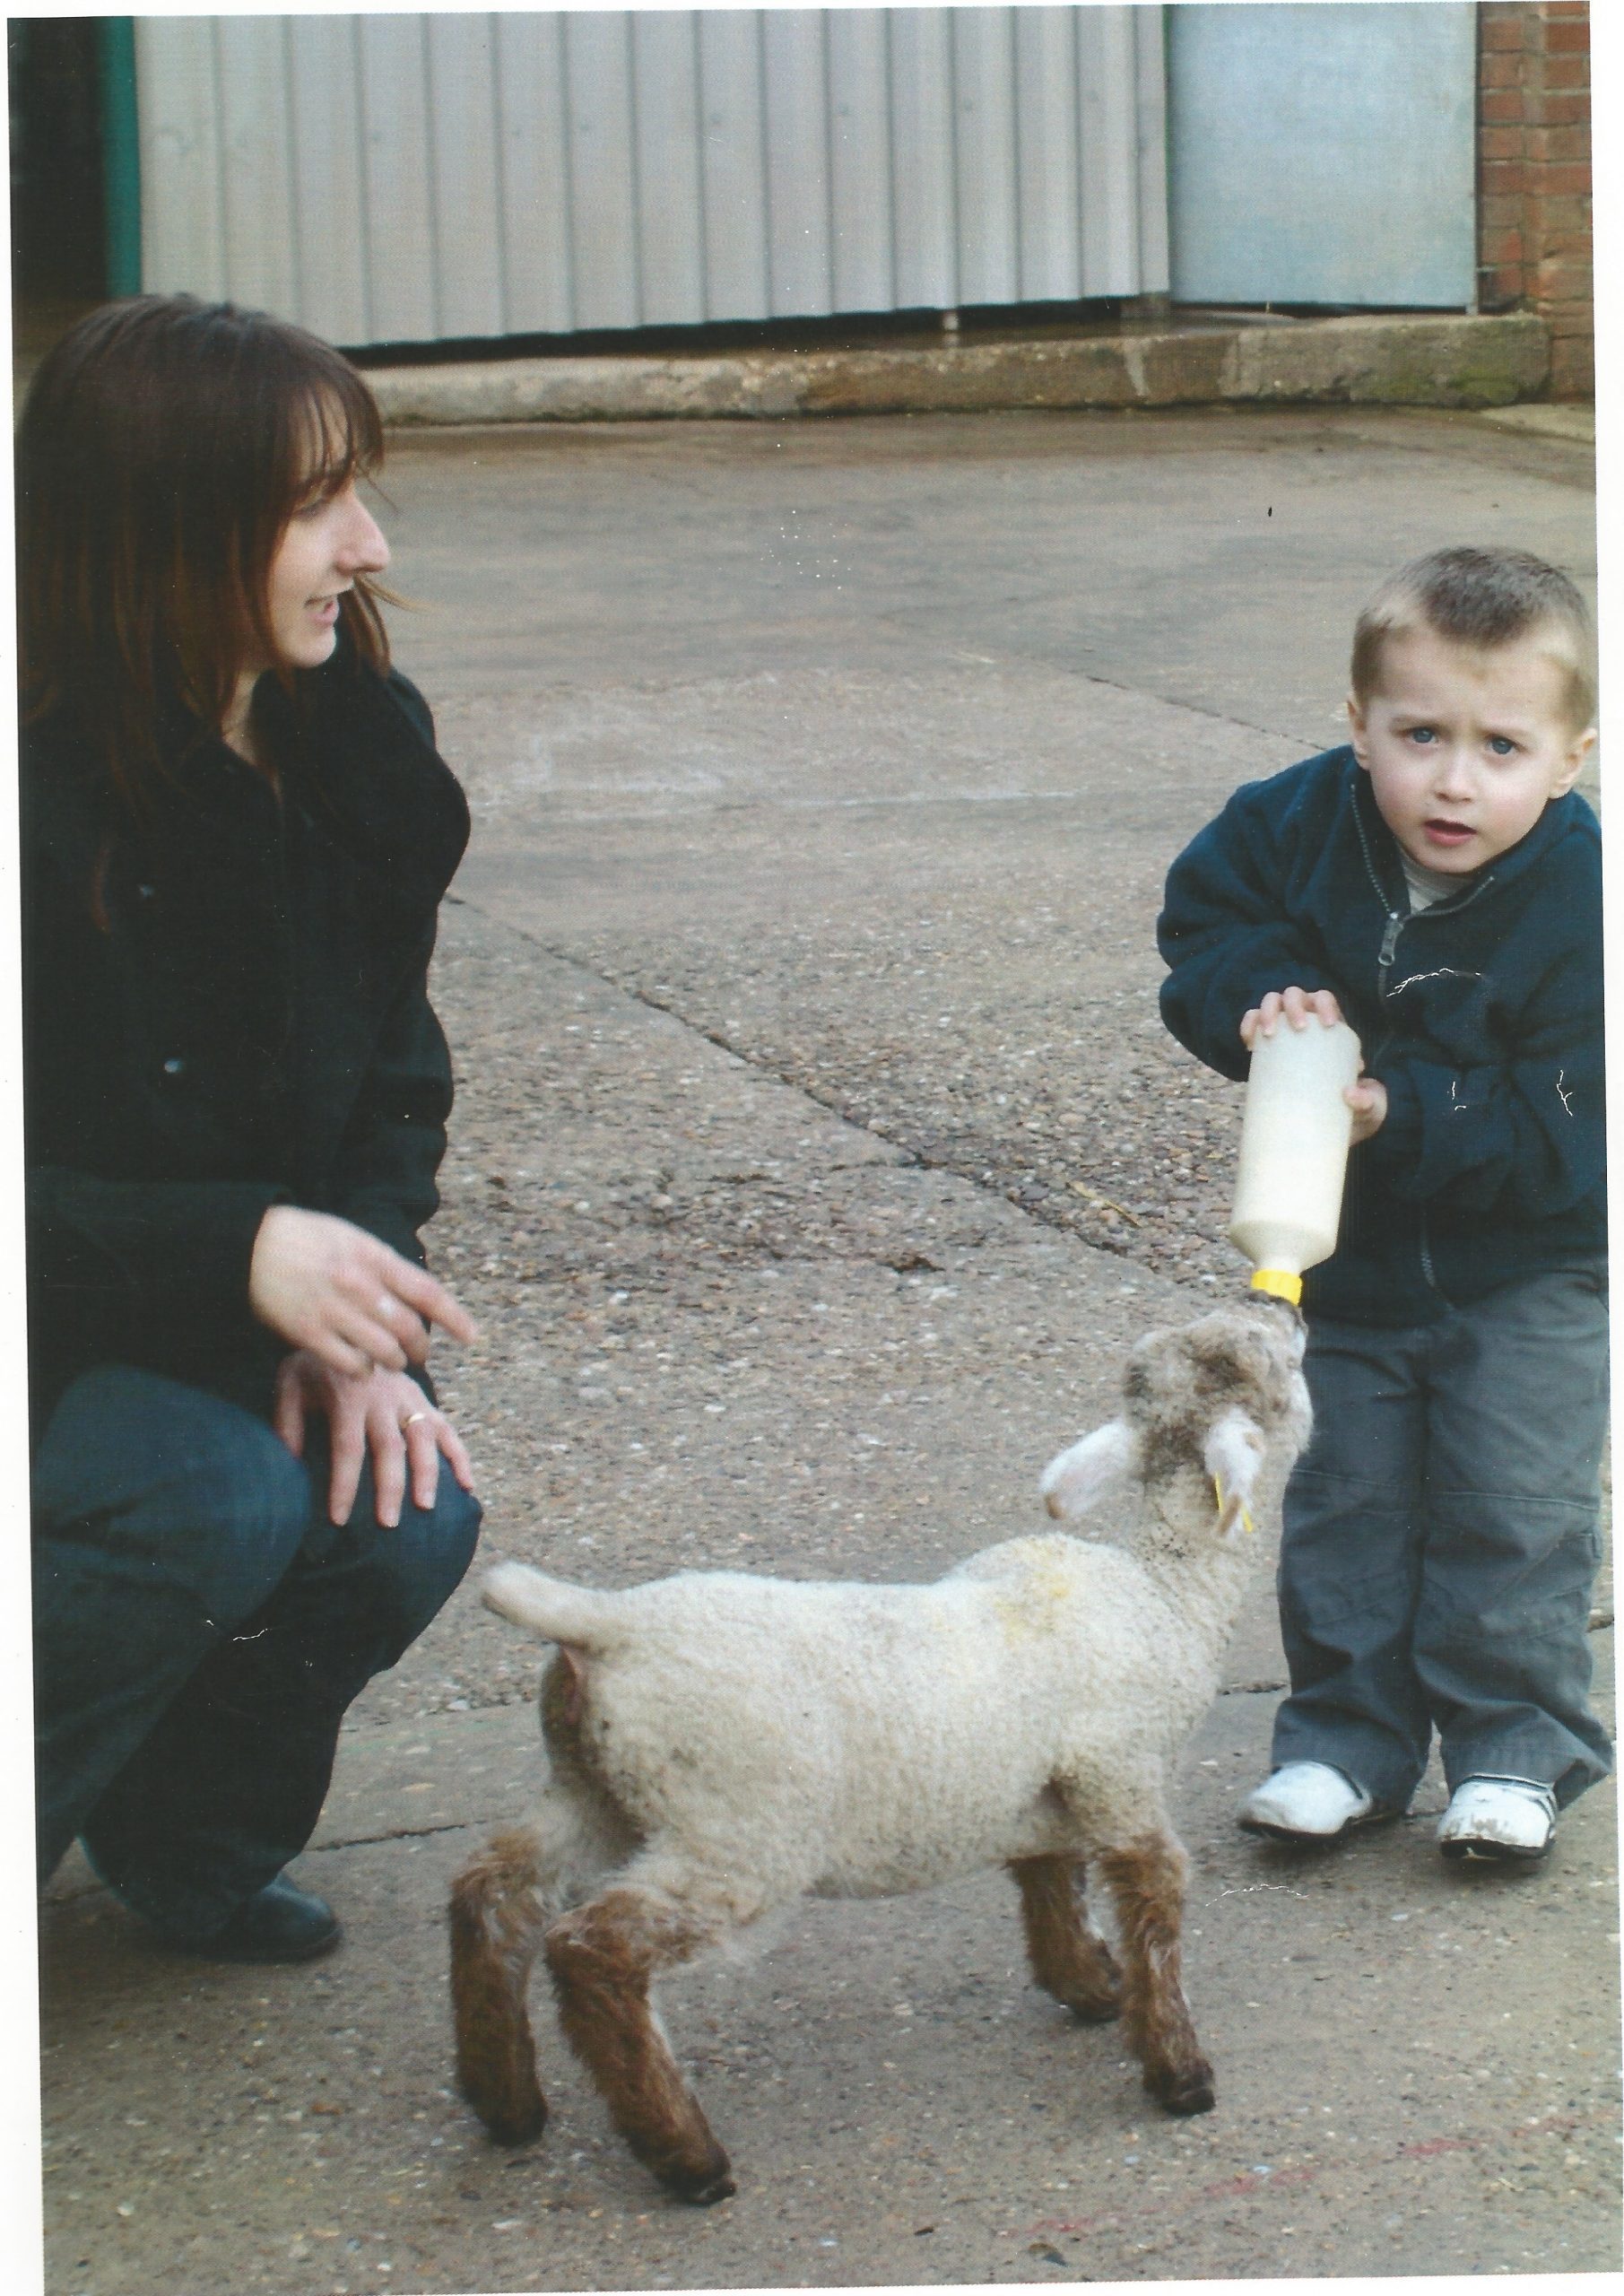 Bottle feeding a lamb in 2000